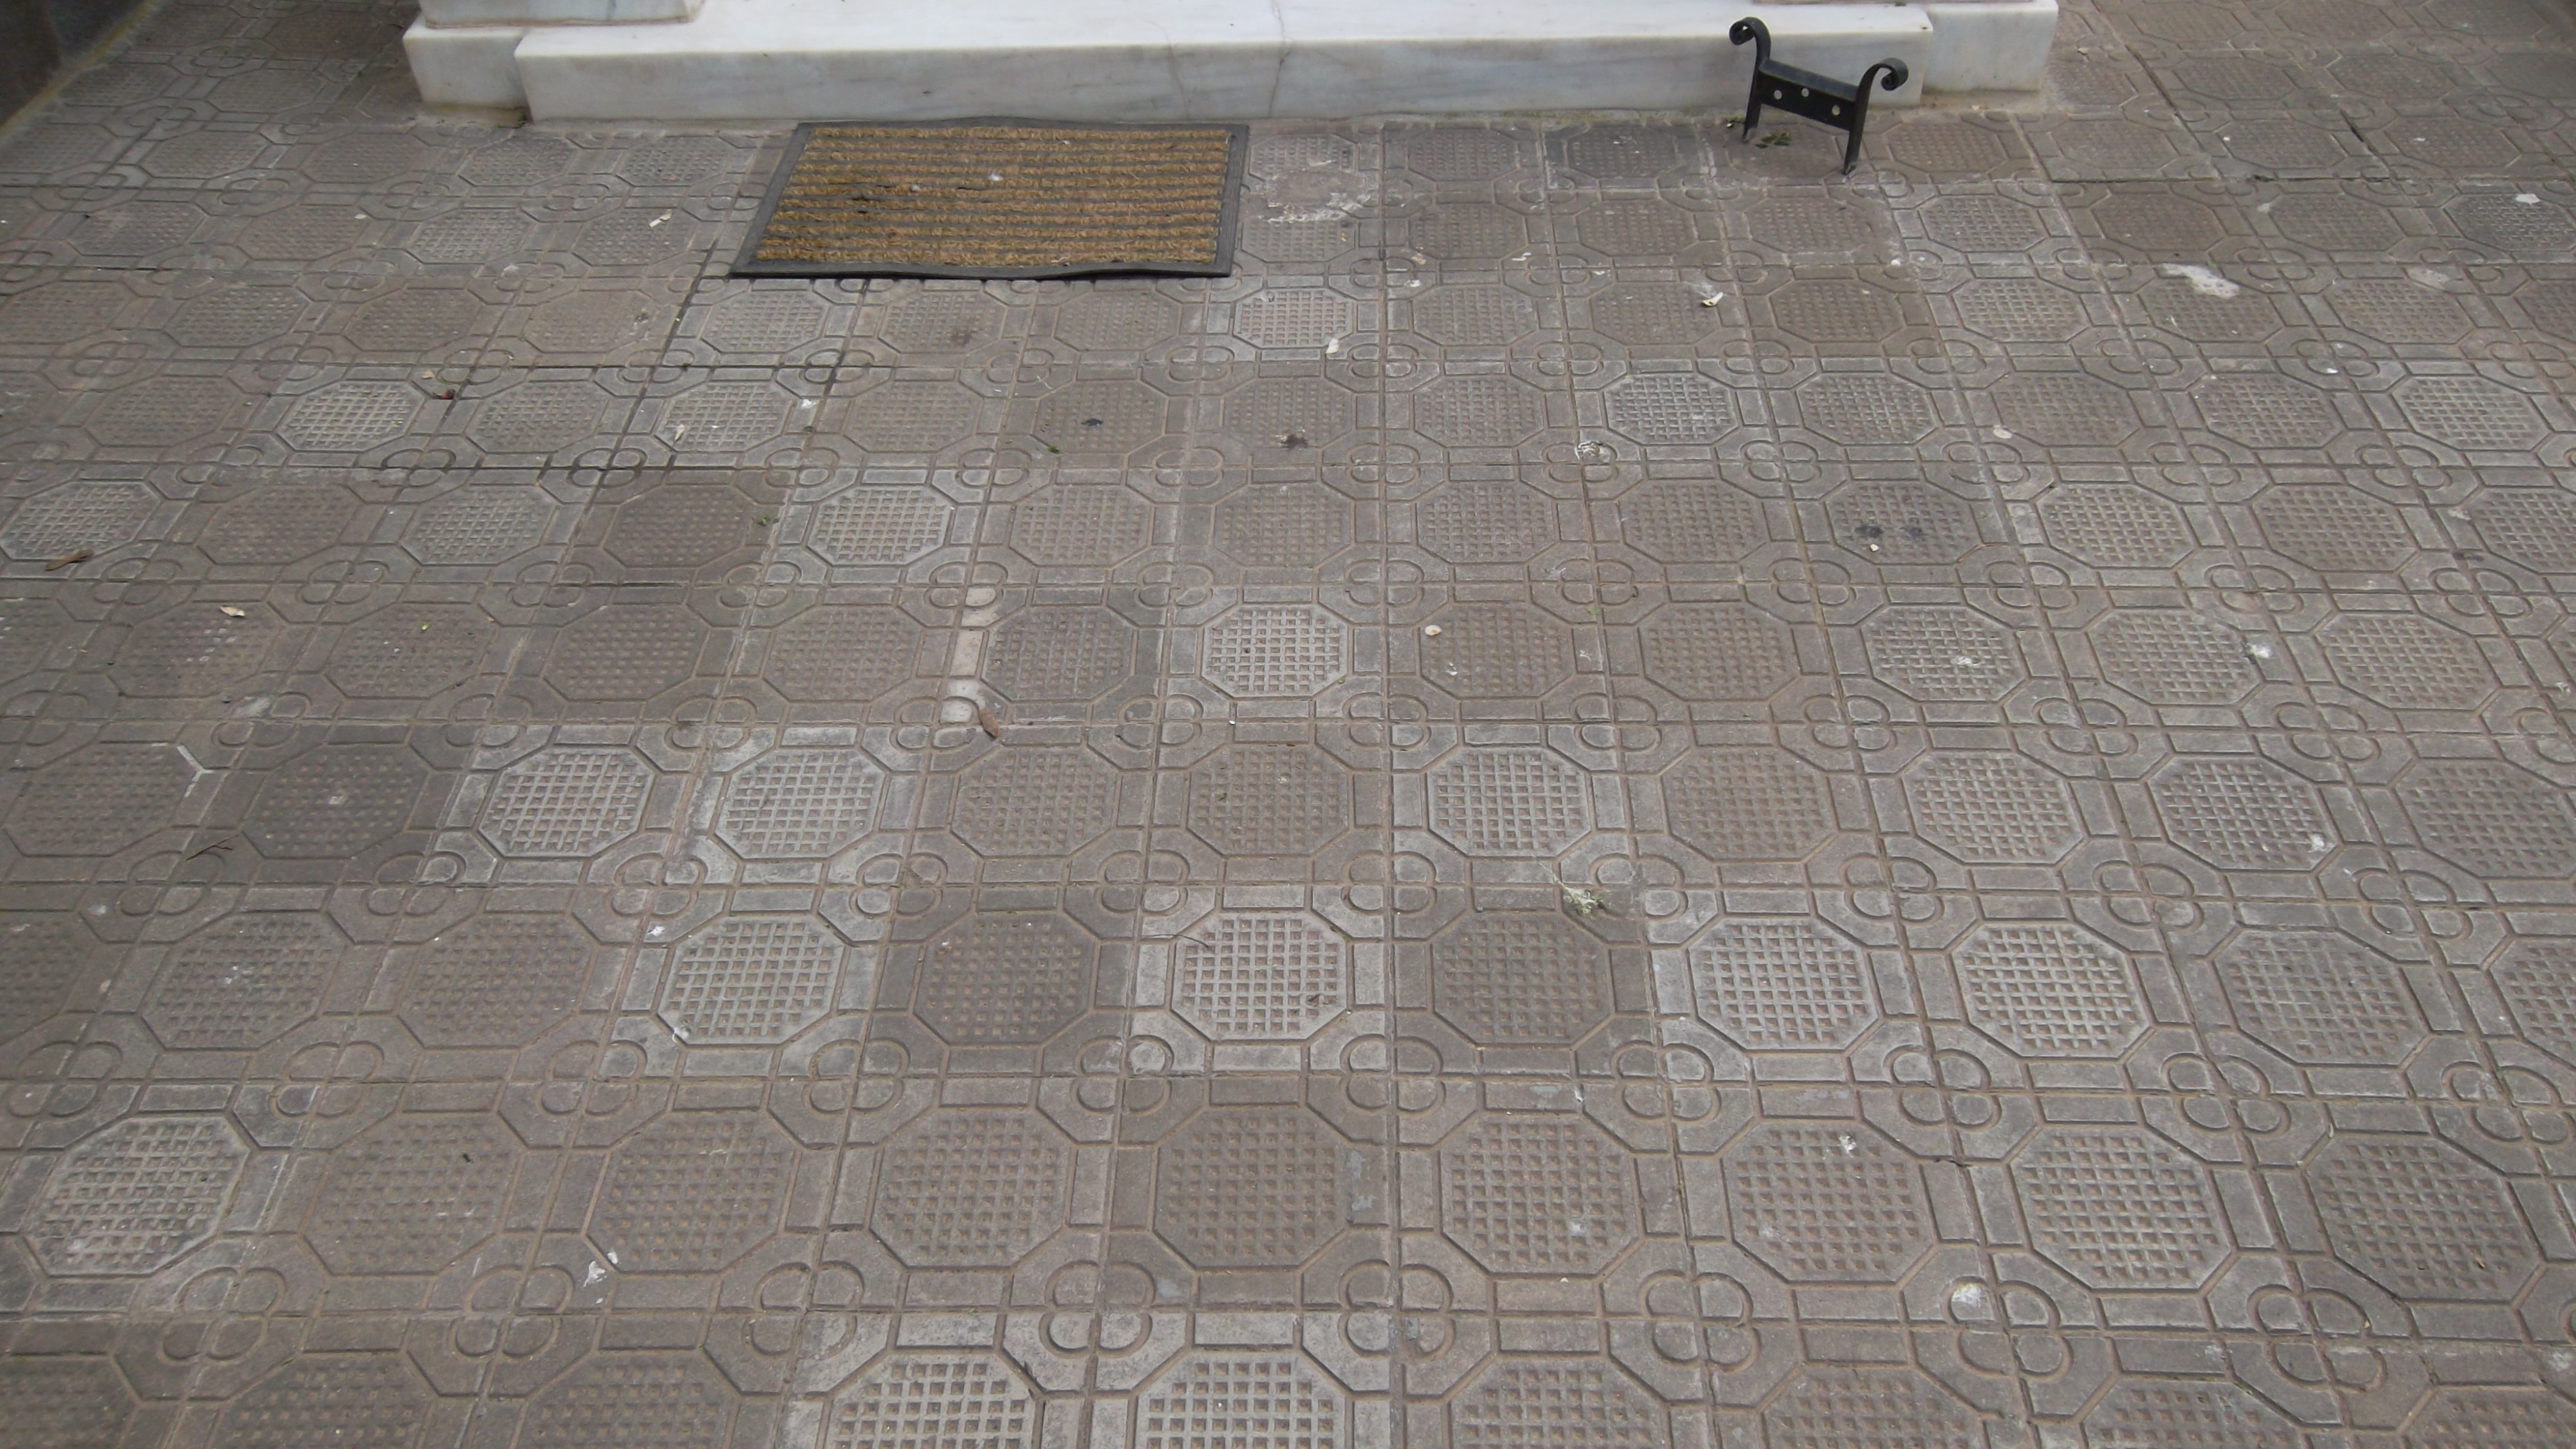 Relief concrete tiles of the yard. Metallic shoe scraper.